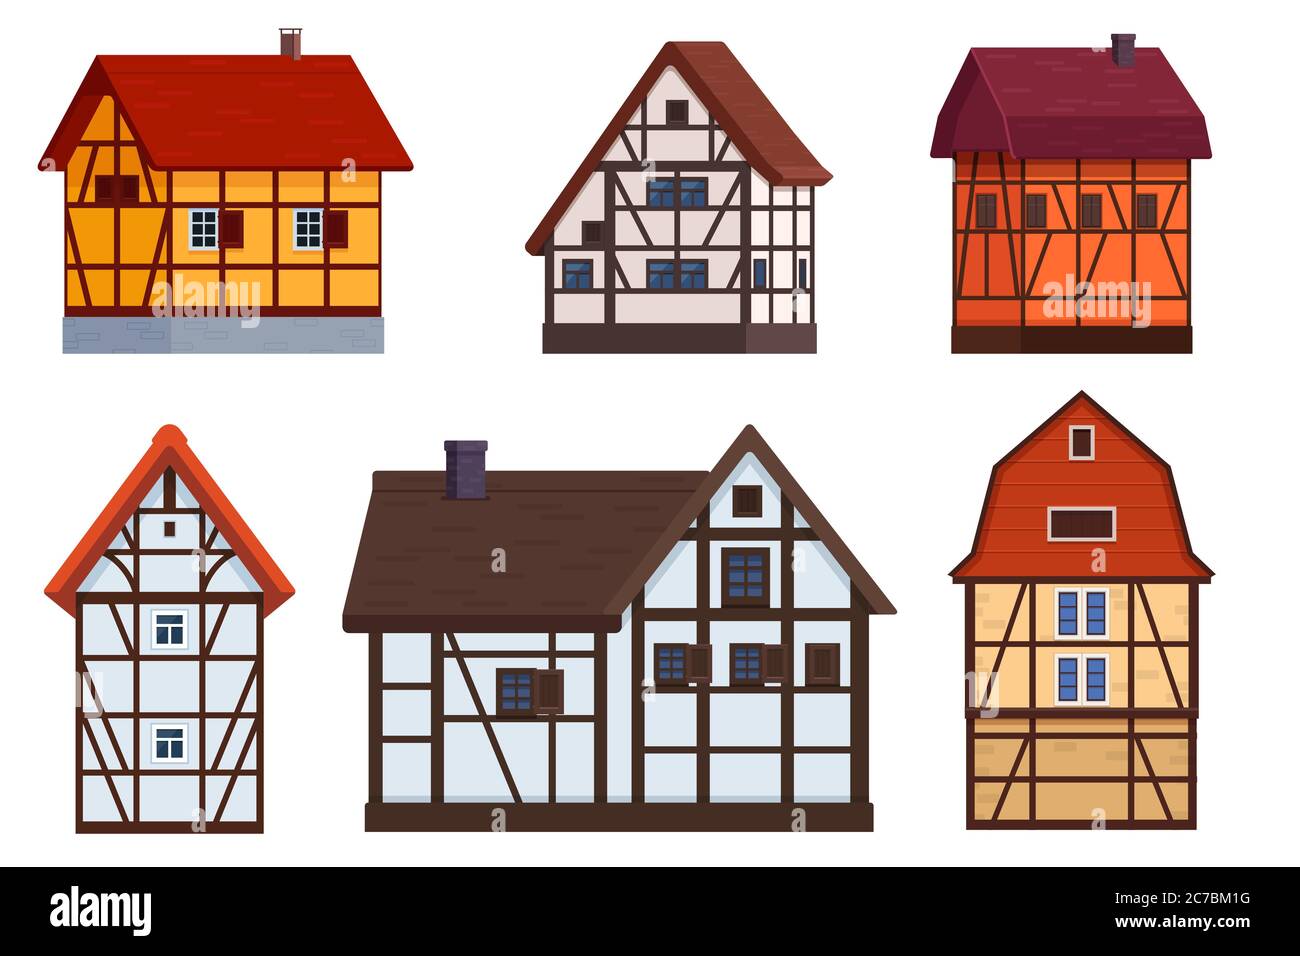 Conjunto de casas de entramado de madera sobre blanco Ilustración del Vector